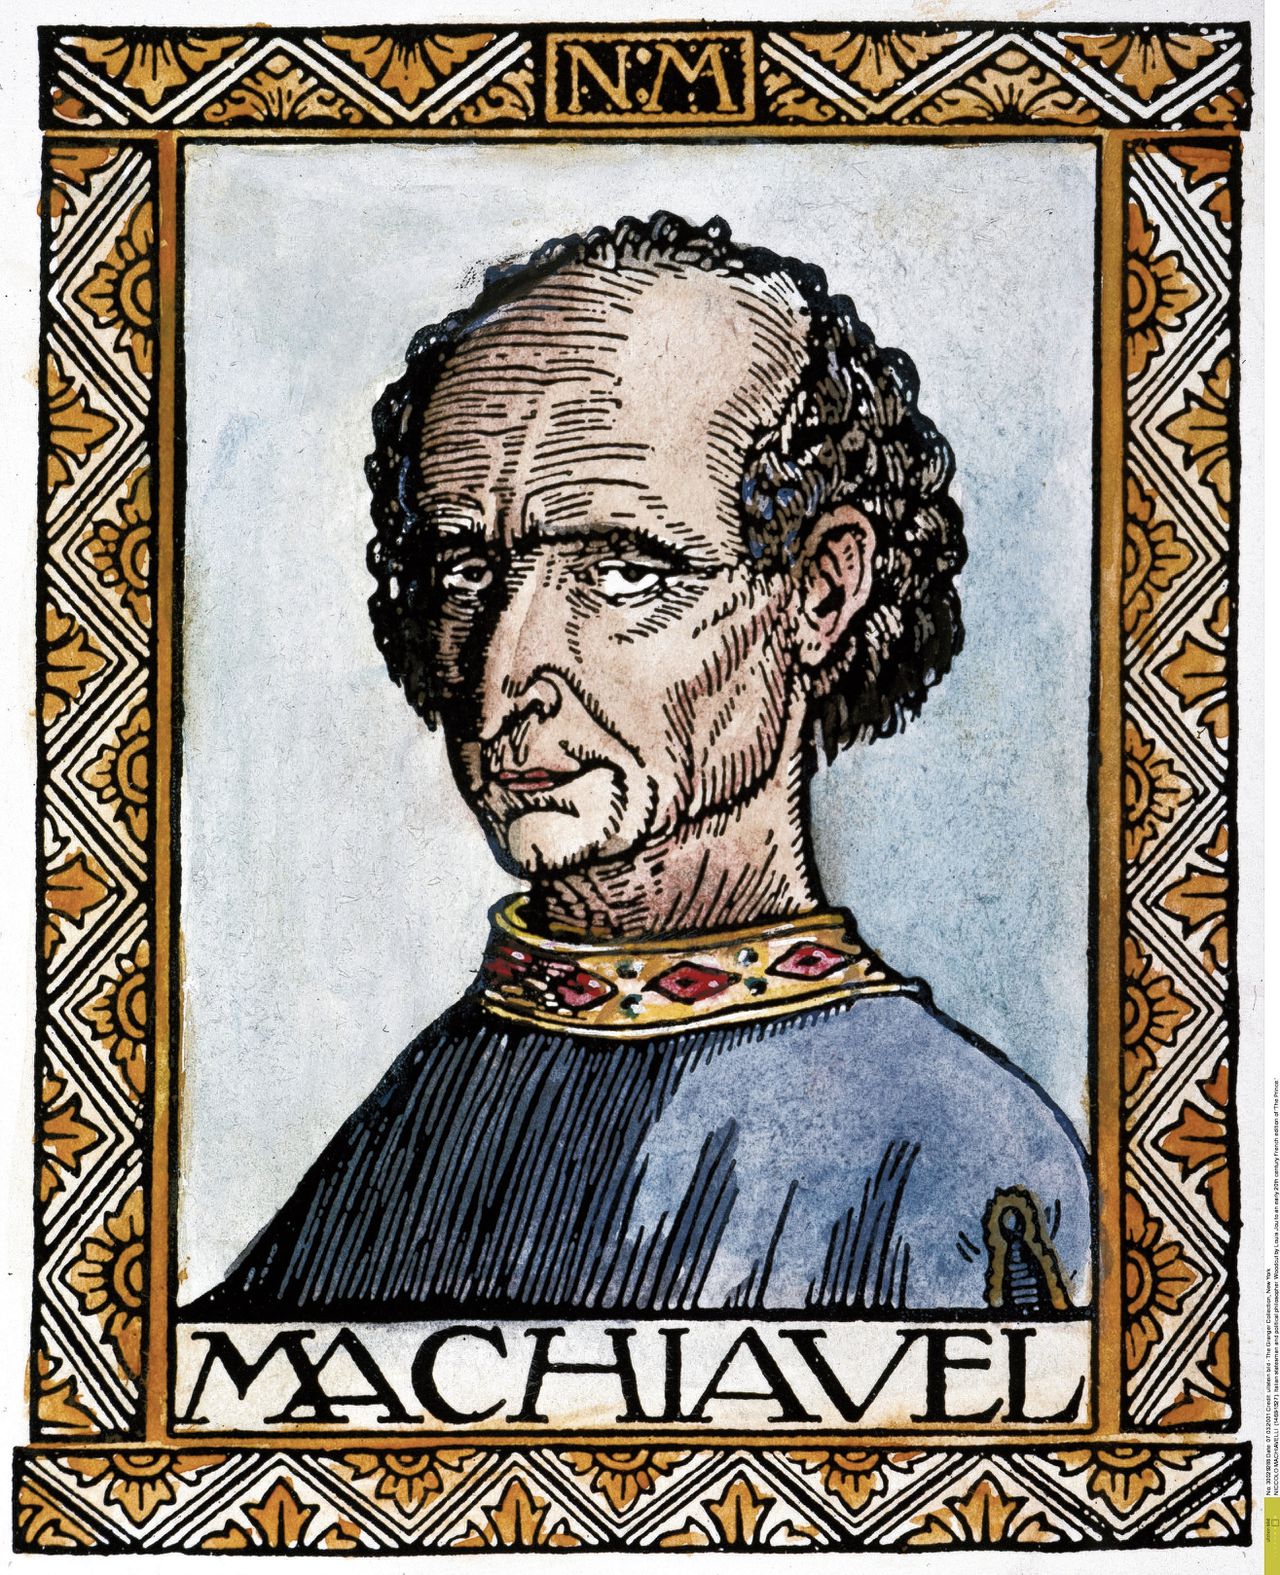 Houtsnede van Machiavelli door Louis Jou, begin twintigste eeuw.